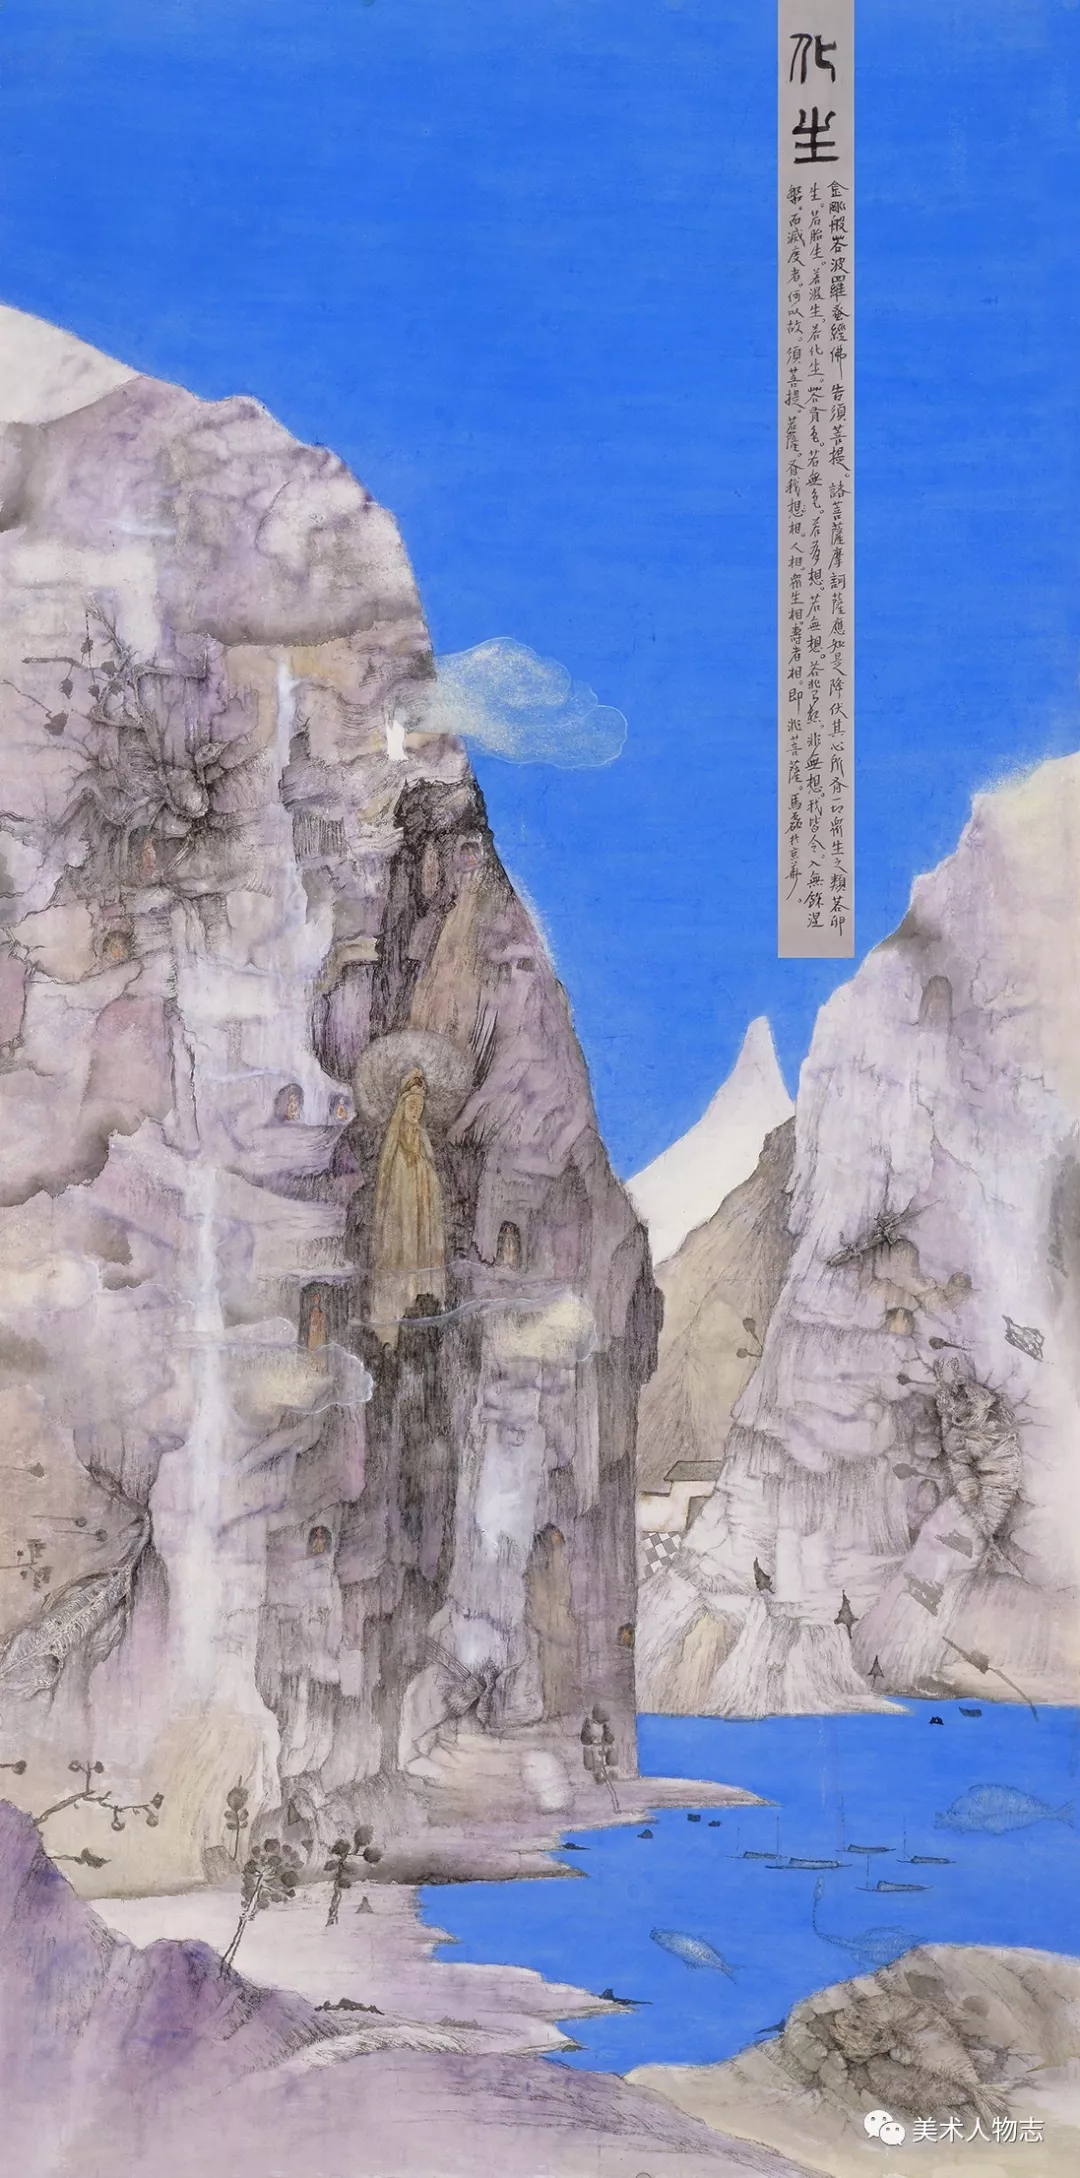 祝贺安徽画家马磊老师《化生》中国画作品入选全国美术作品展